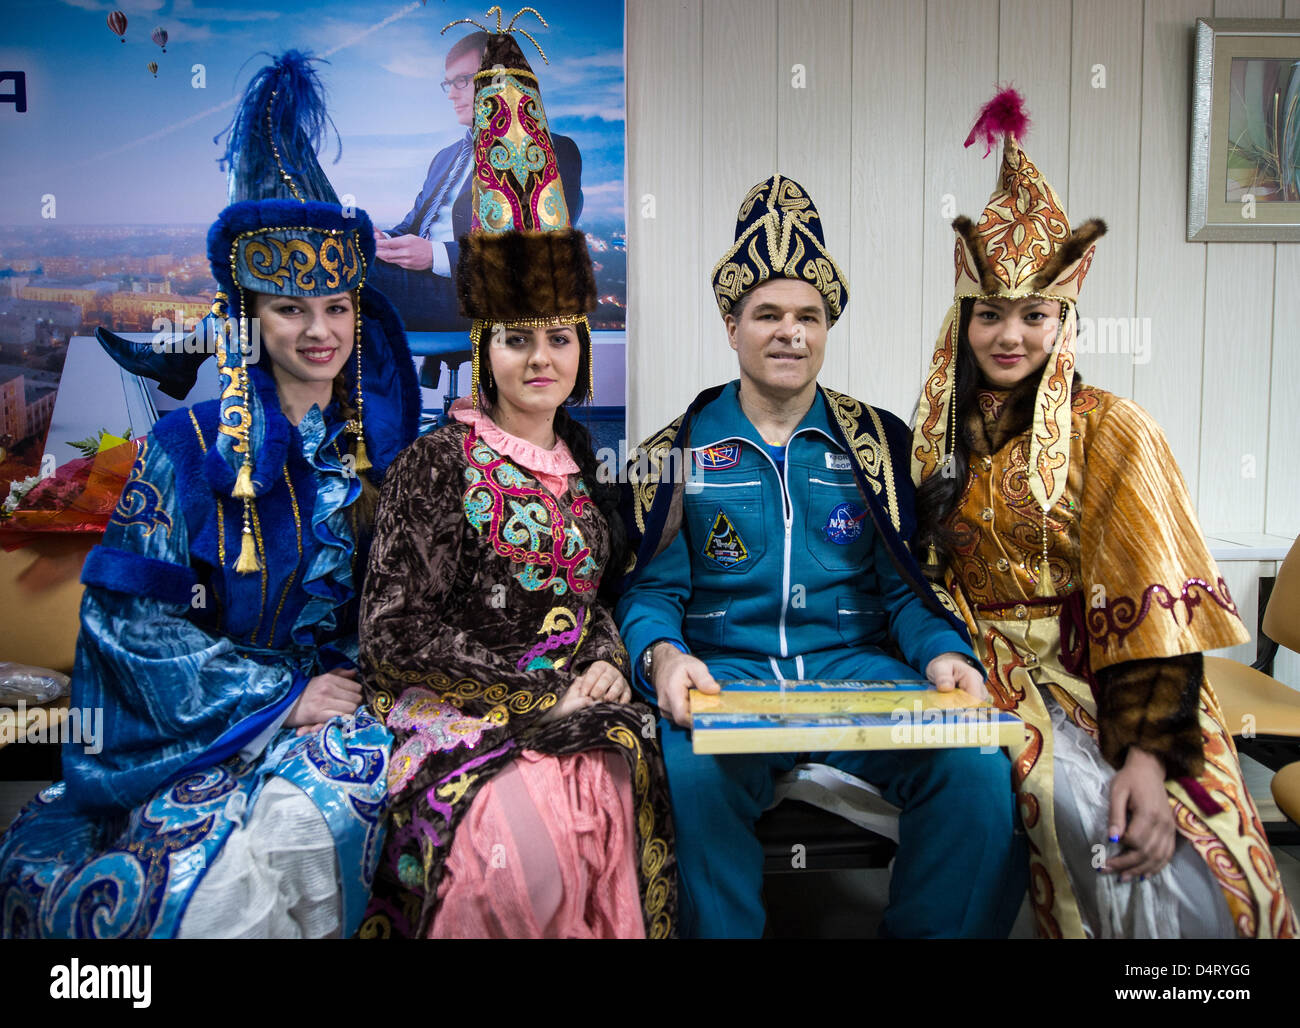 Expedition 34 Commander Kevin Ford der NASA posiert für ein Foto mit Frauen in zeremoniellen kasachischen Kleid am Flughafen Kustanay 16. März 2013 in Arkalyk Kasachstan. Novitskiy, Tarelkin und Ford kehrte aus 142 Tage an Bord der internationalen Raumstation ISS, wo sie als Mitglieder der Expedition 33 und 34 Mannschaften dienten. Stockfoto